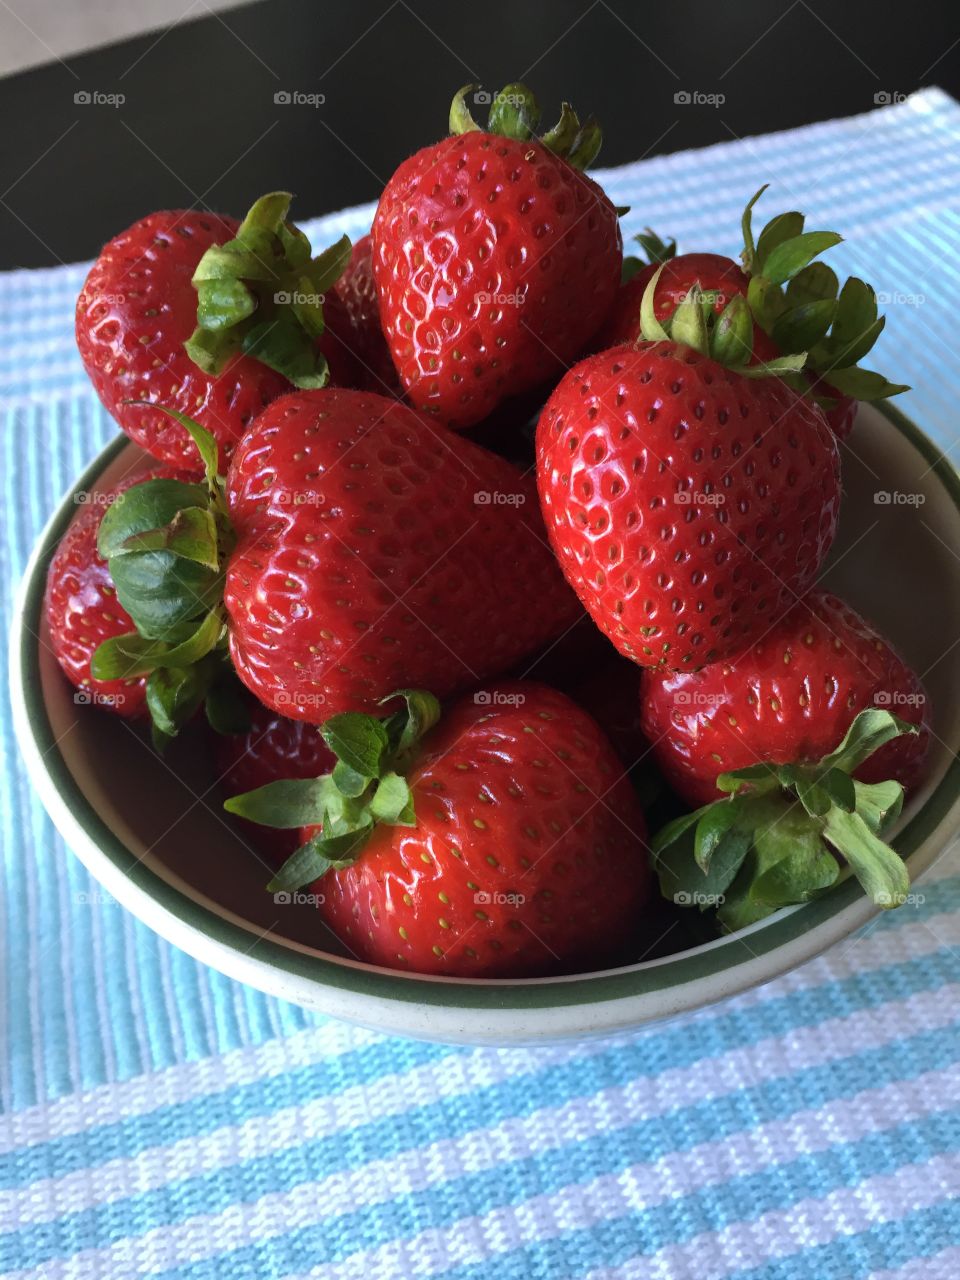 Summer Yum. Fresh strawberries, nothing better!